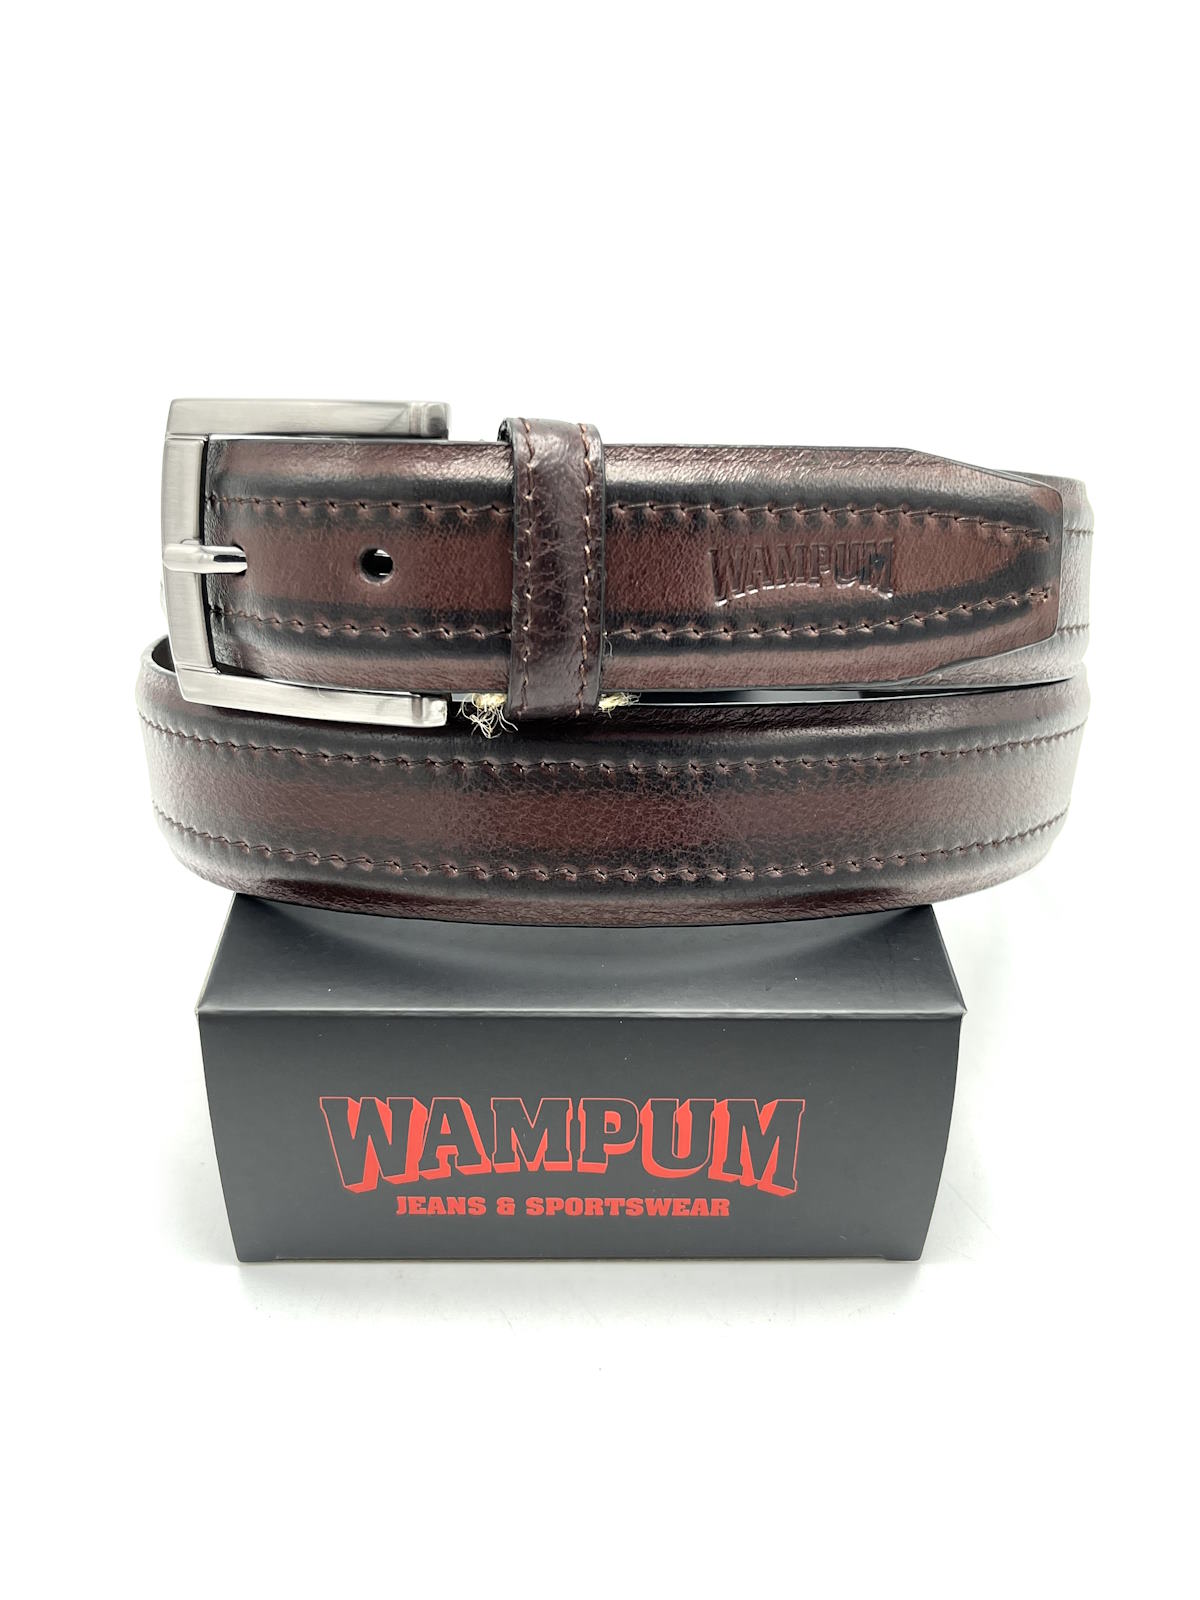 Genuine leather belt, Brand Wampum, art. IDK504/35